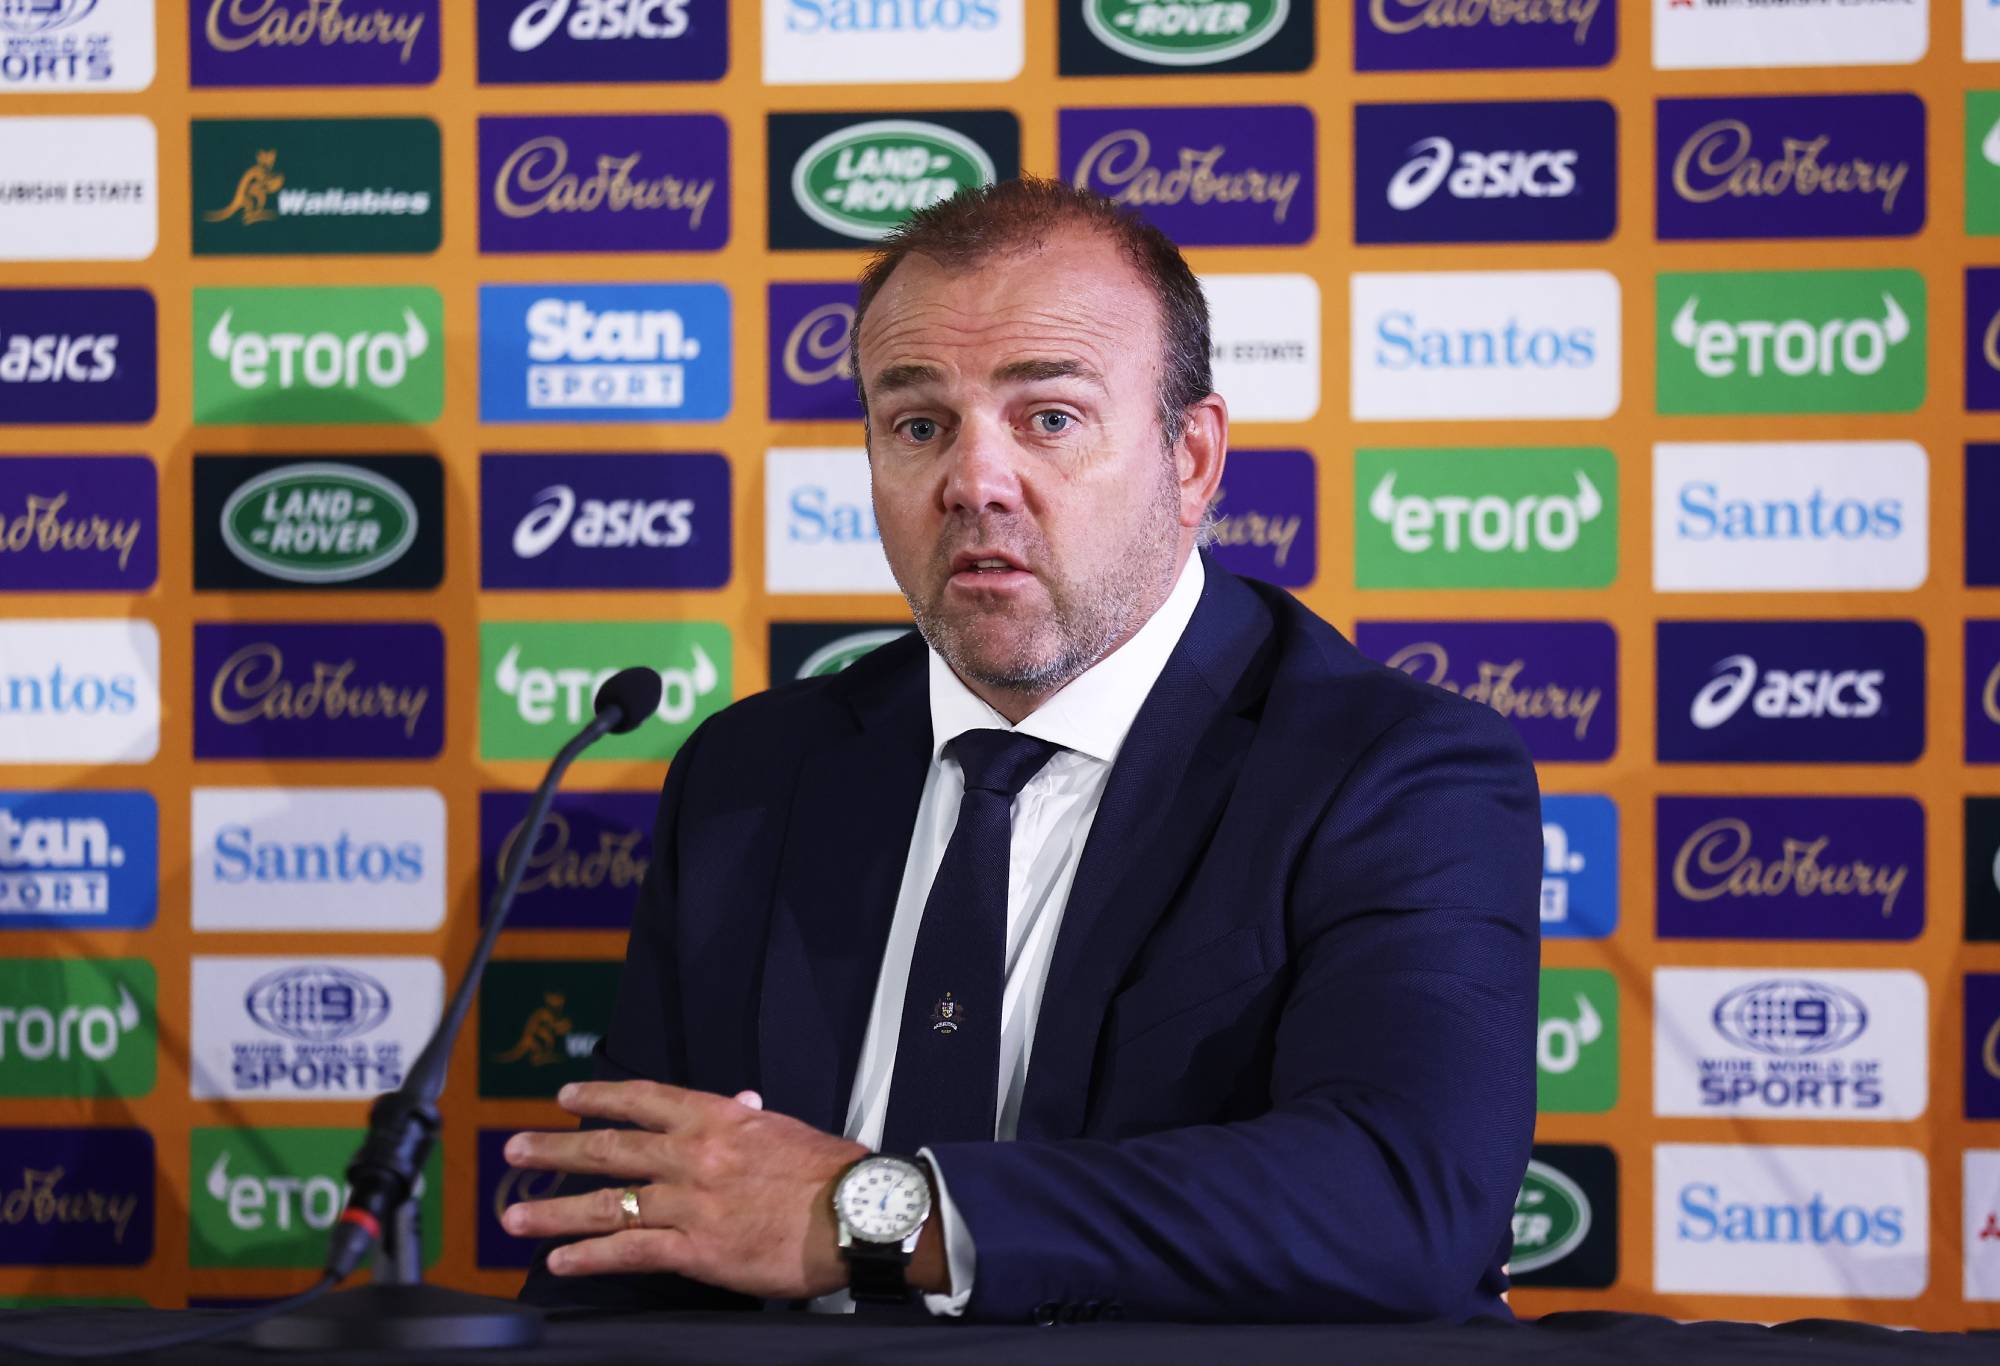 Mengapa bos Rugby Australia mengundurkan diri empat bulan keluar dari Piala Dunia saat penggantinya muncul